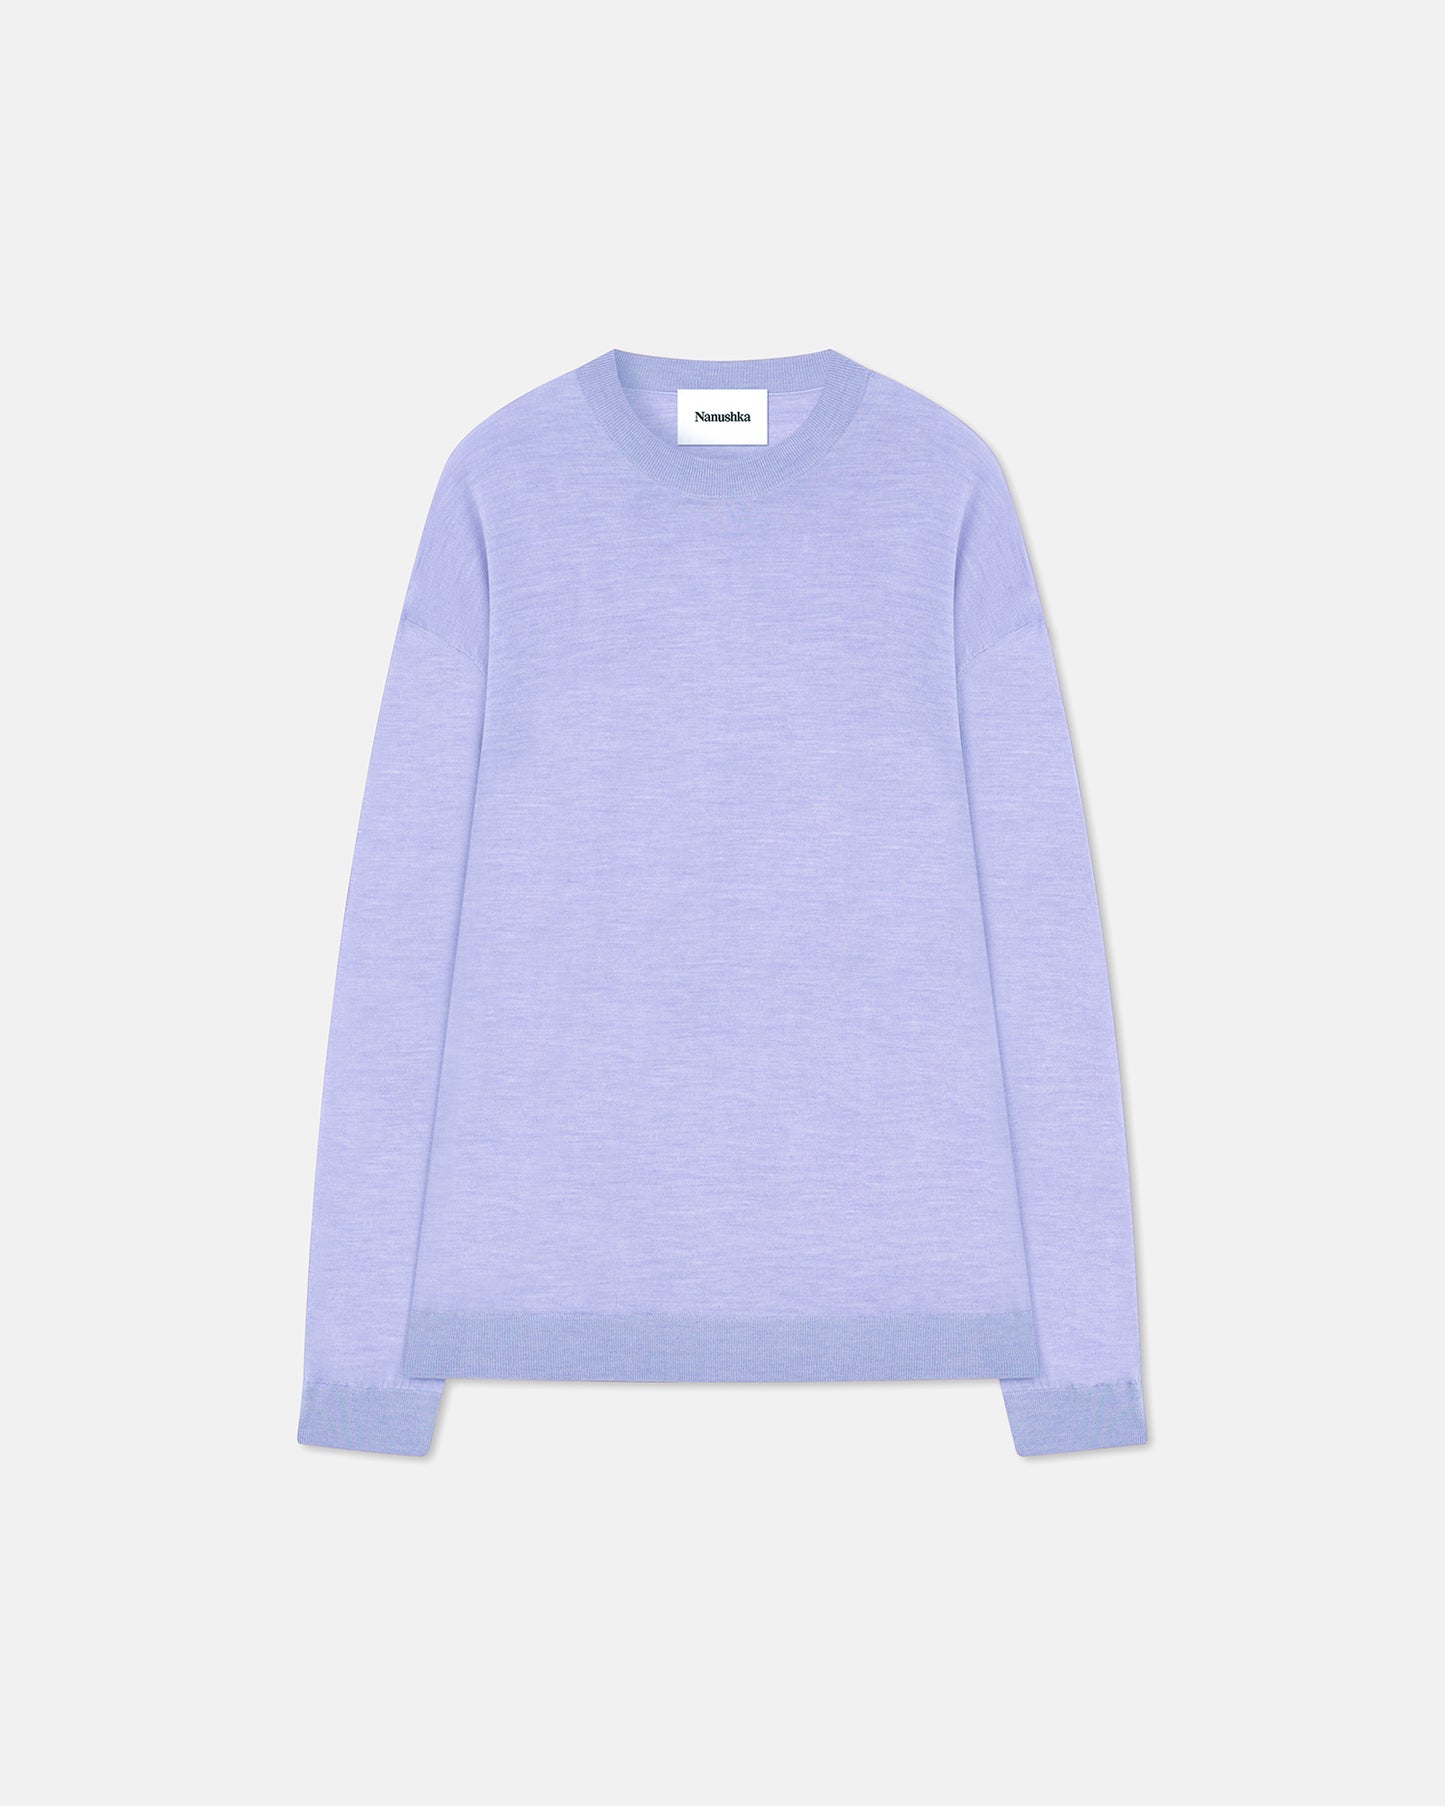 Yossi - Merino Wool Sweater - Lilac Pf23